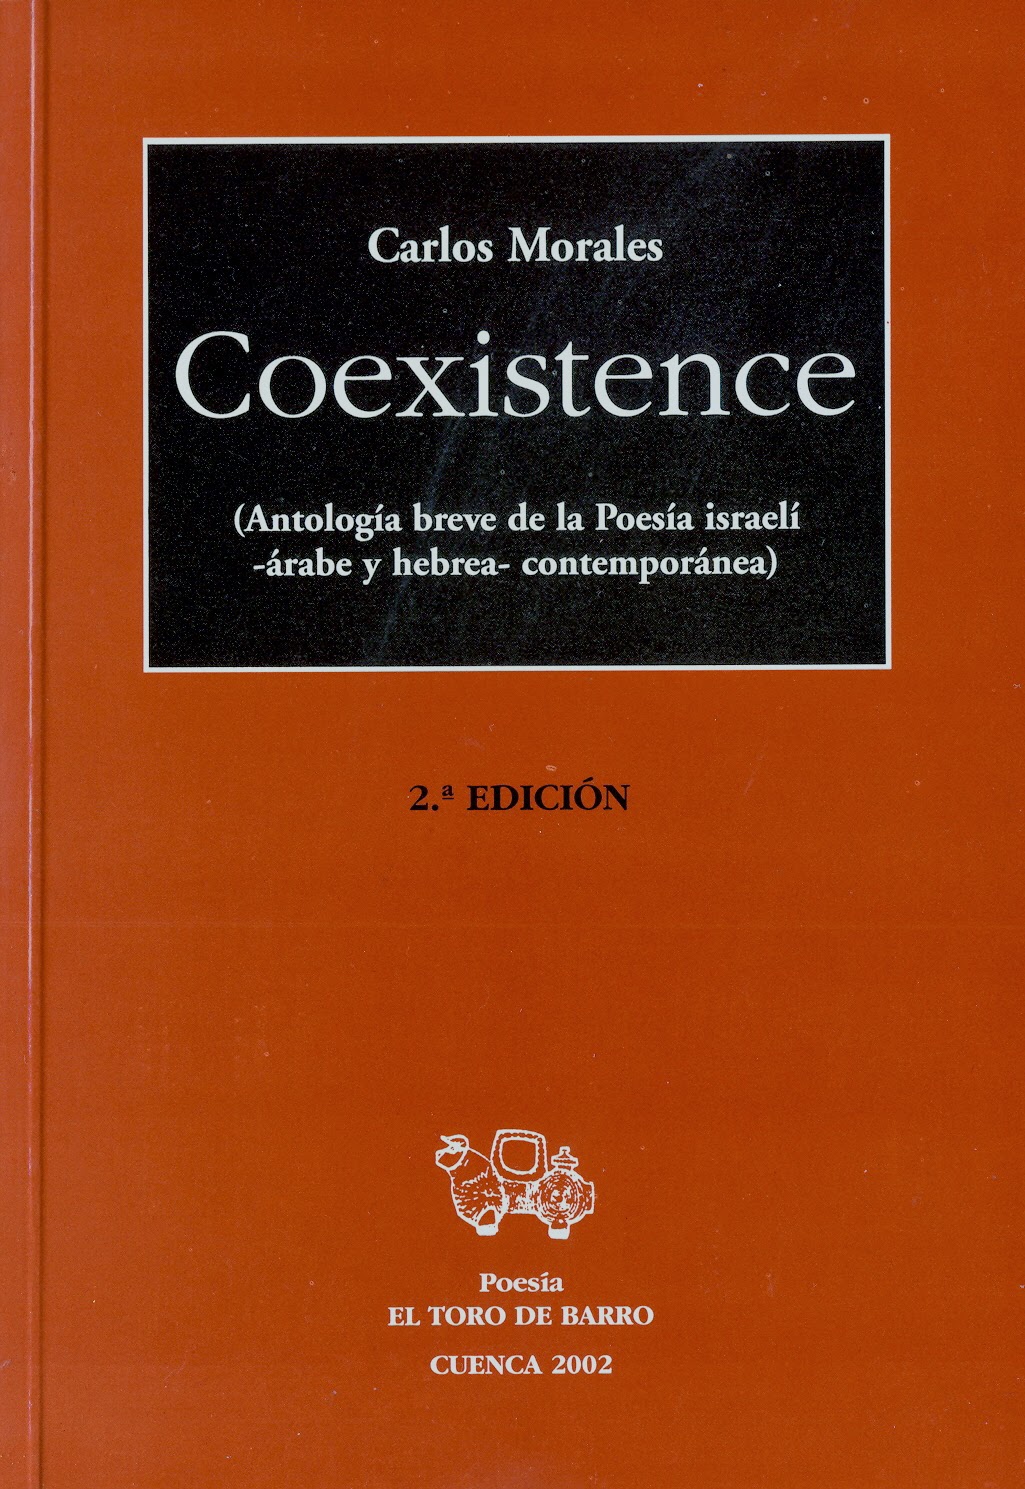 Carlos Morales, "Coexistence (Antonología de la poesía israelí -árabe y hebrea- contemporánea)", Ediciones El Toro de Barro, Tarancón de Cuenca 2002